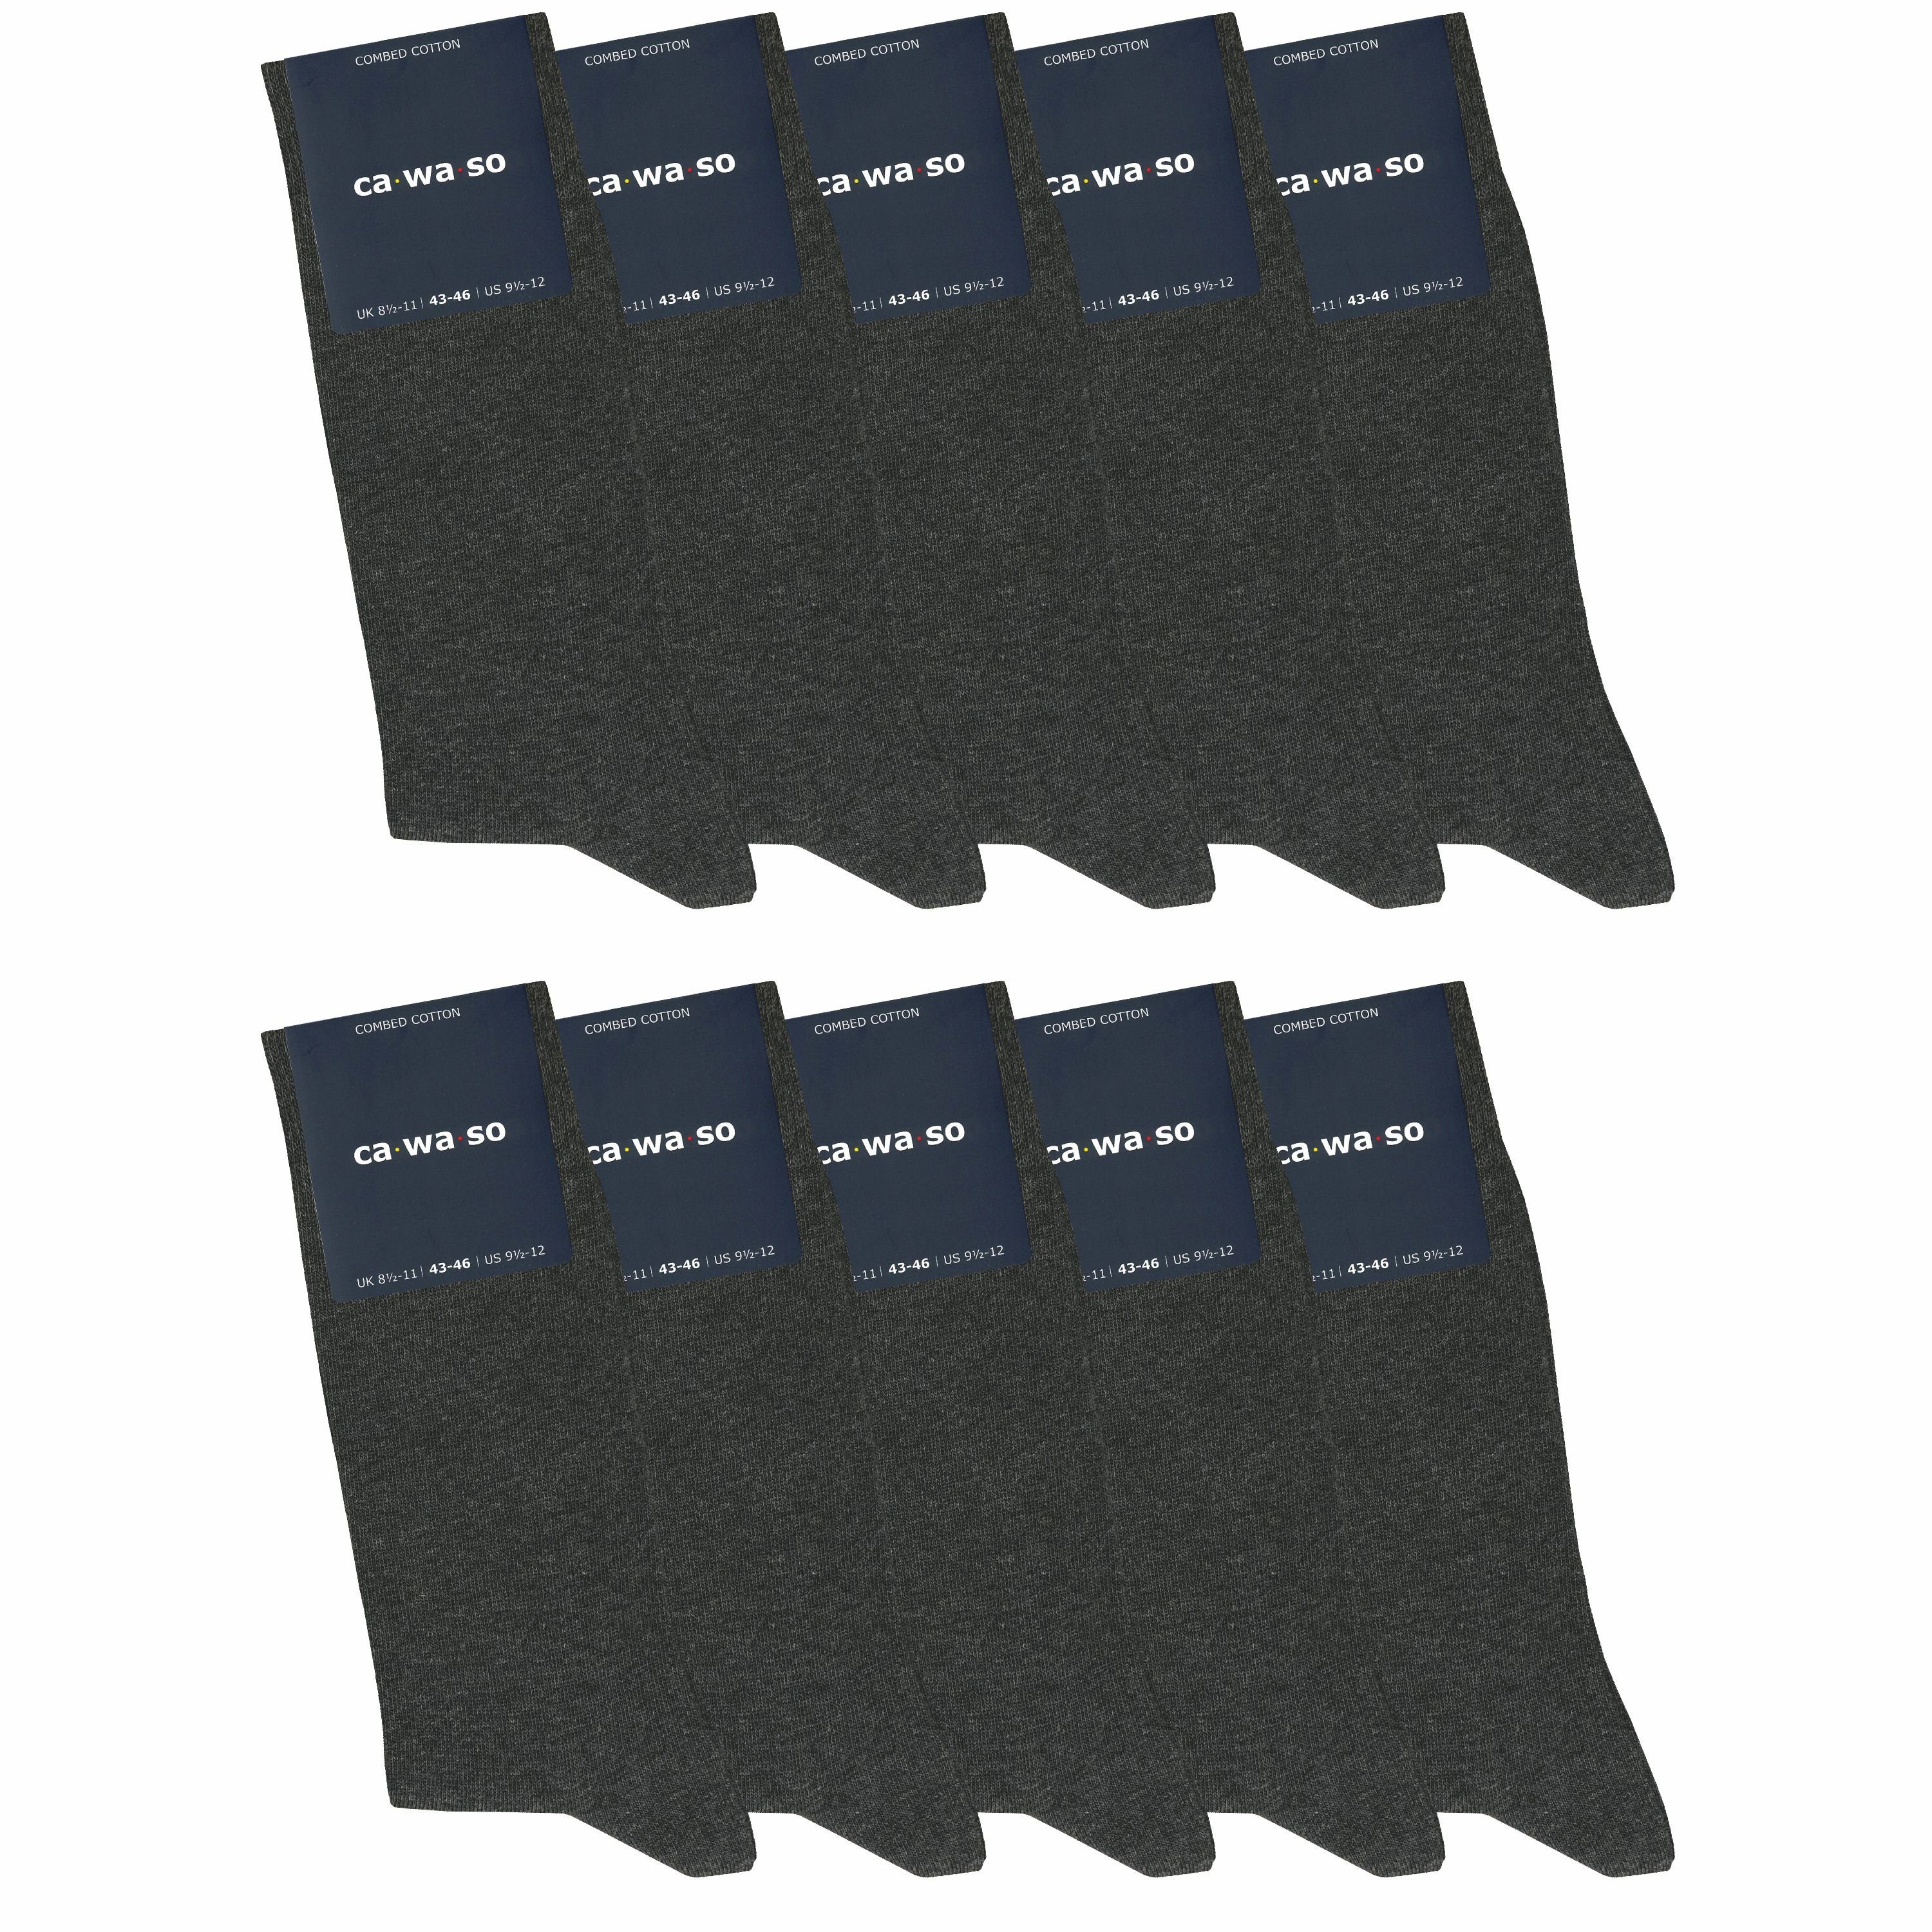 ca·wa·so Socken für Damen & Herren - bequem & weich - aus doppelt gekämmter Baumwolle (10 Paar) Socken in schwarz, bunt, grau, blau und weiteren Farben anthrazit